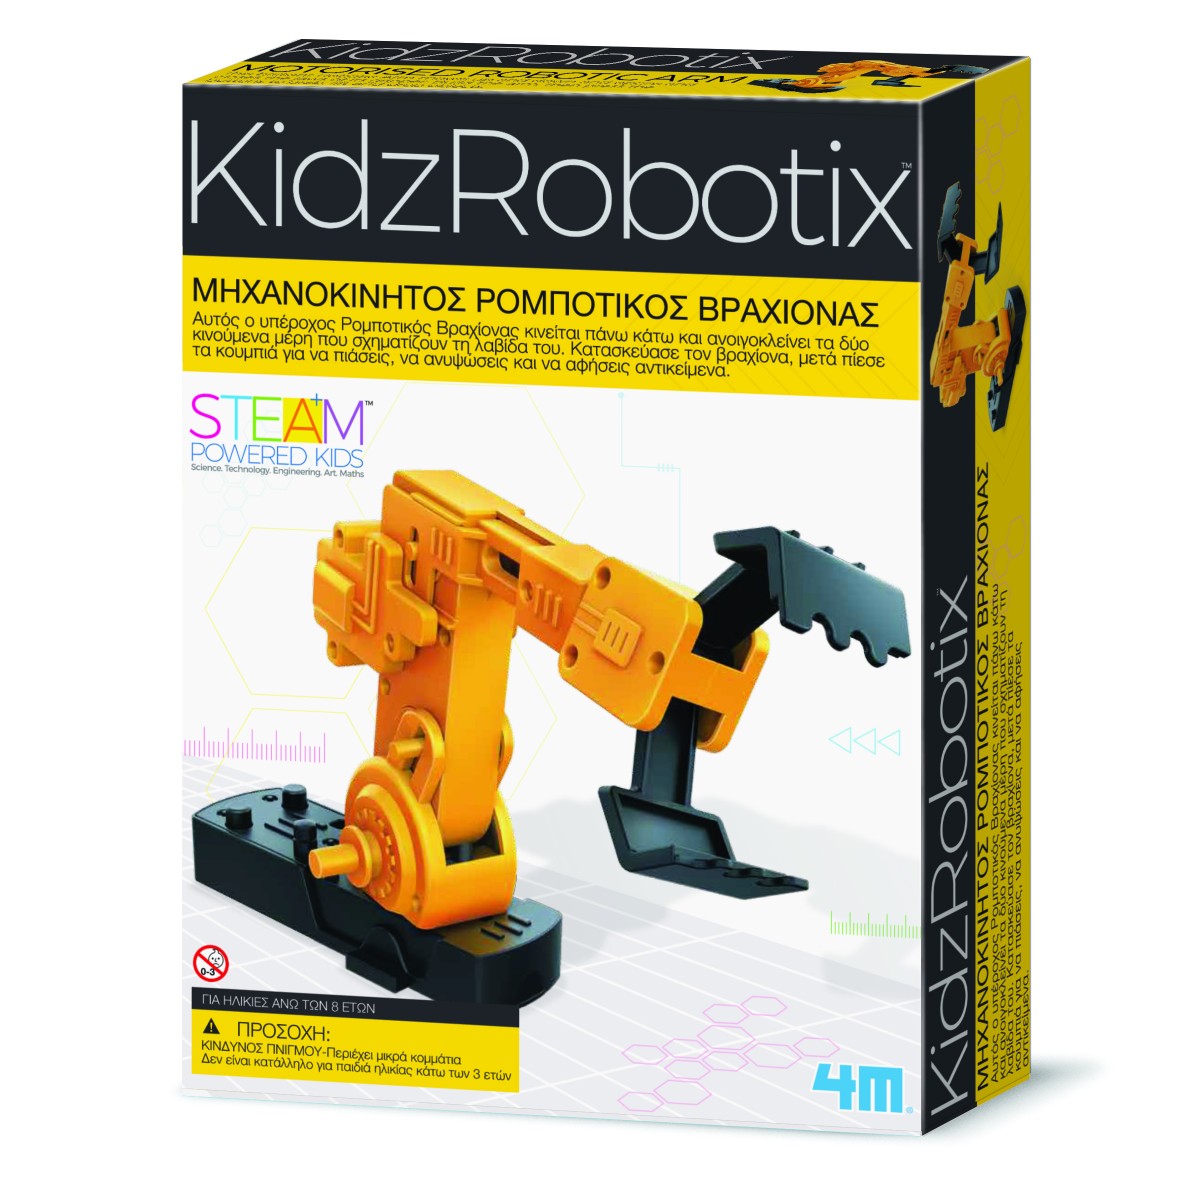 Μηχανοκίνητος Ρομποτικός Βραχίονας για παιδιά | why.gr